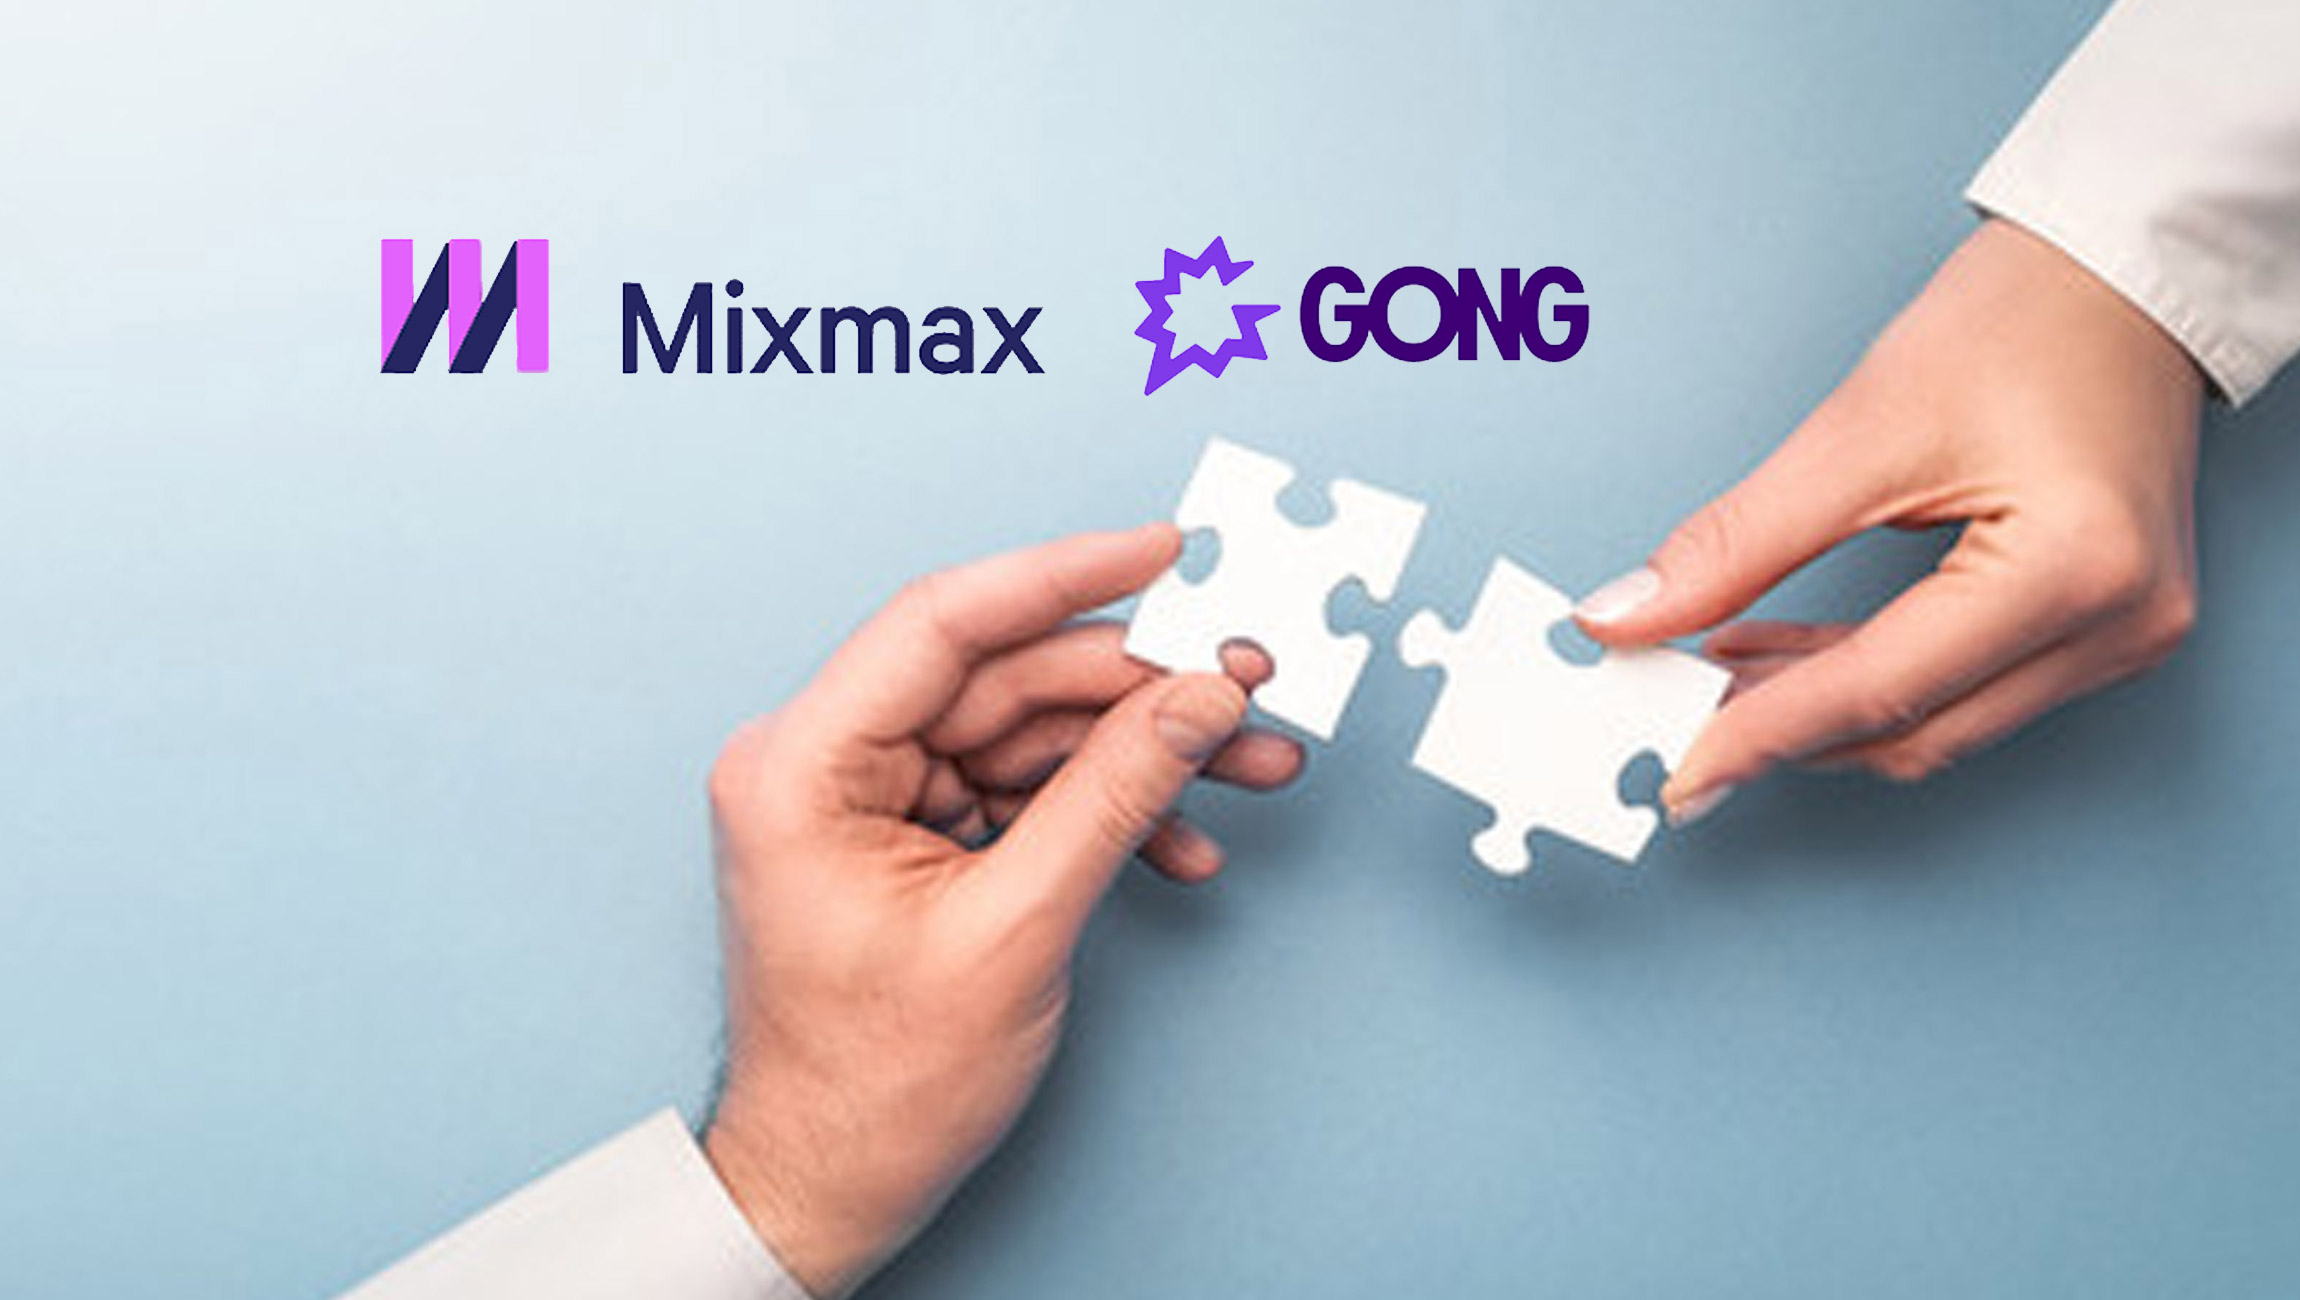 Mixmax Announces Gong Integration for Its Sales Engagement Platform